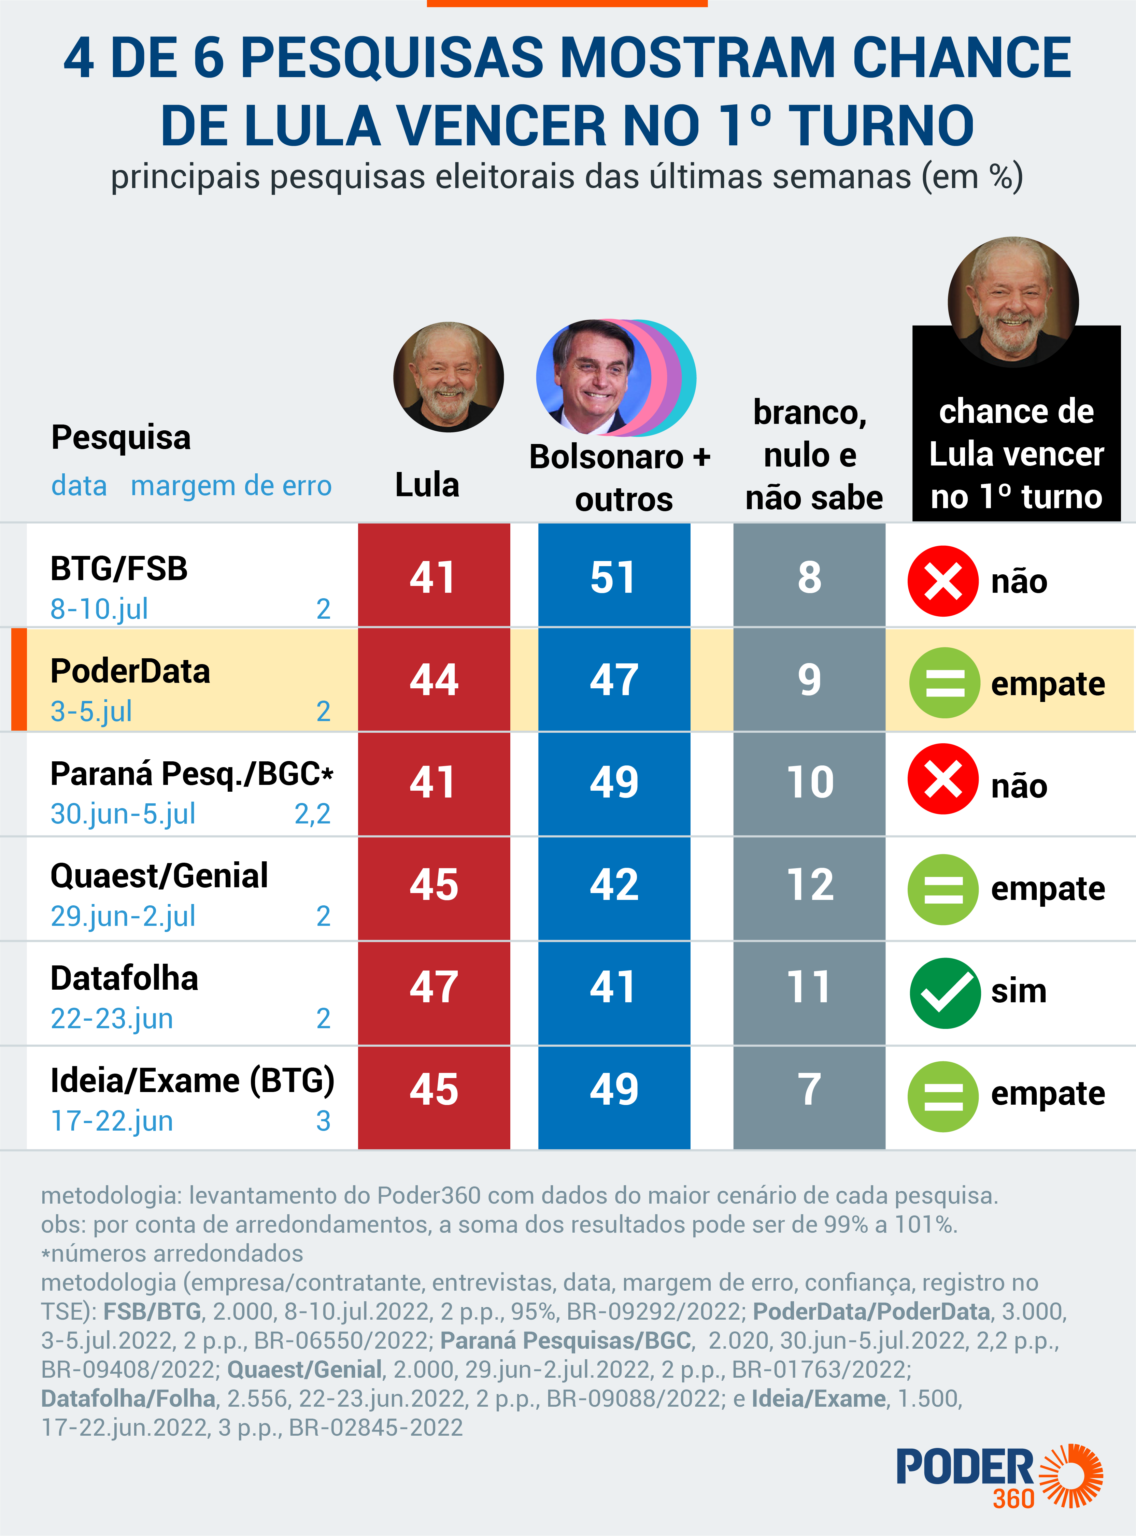 4 pesquisas recentes mostram chance de Lula vencer no 1º turno